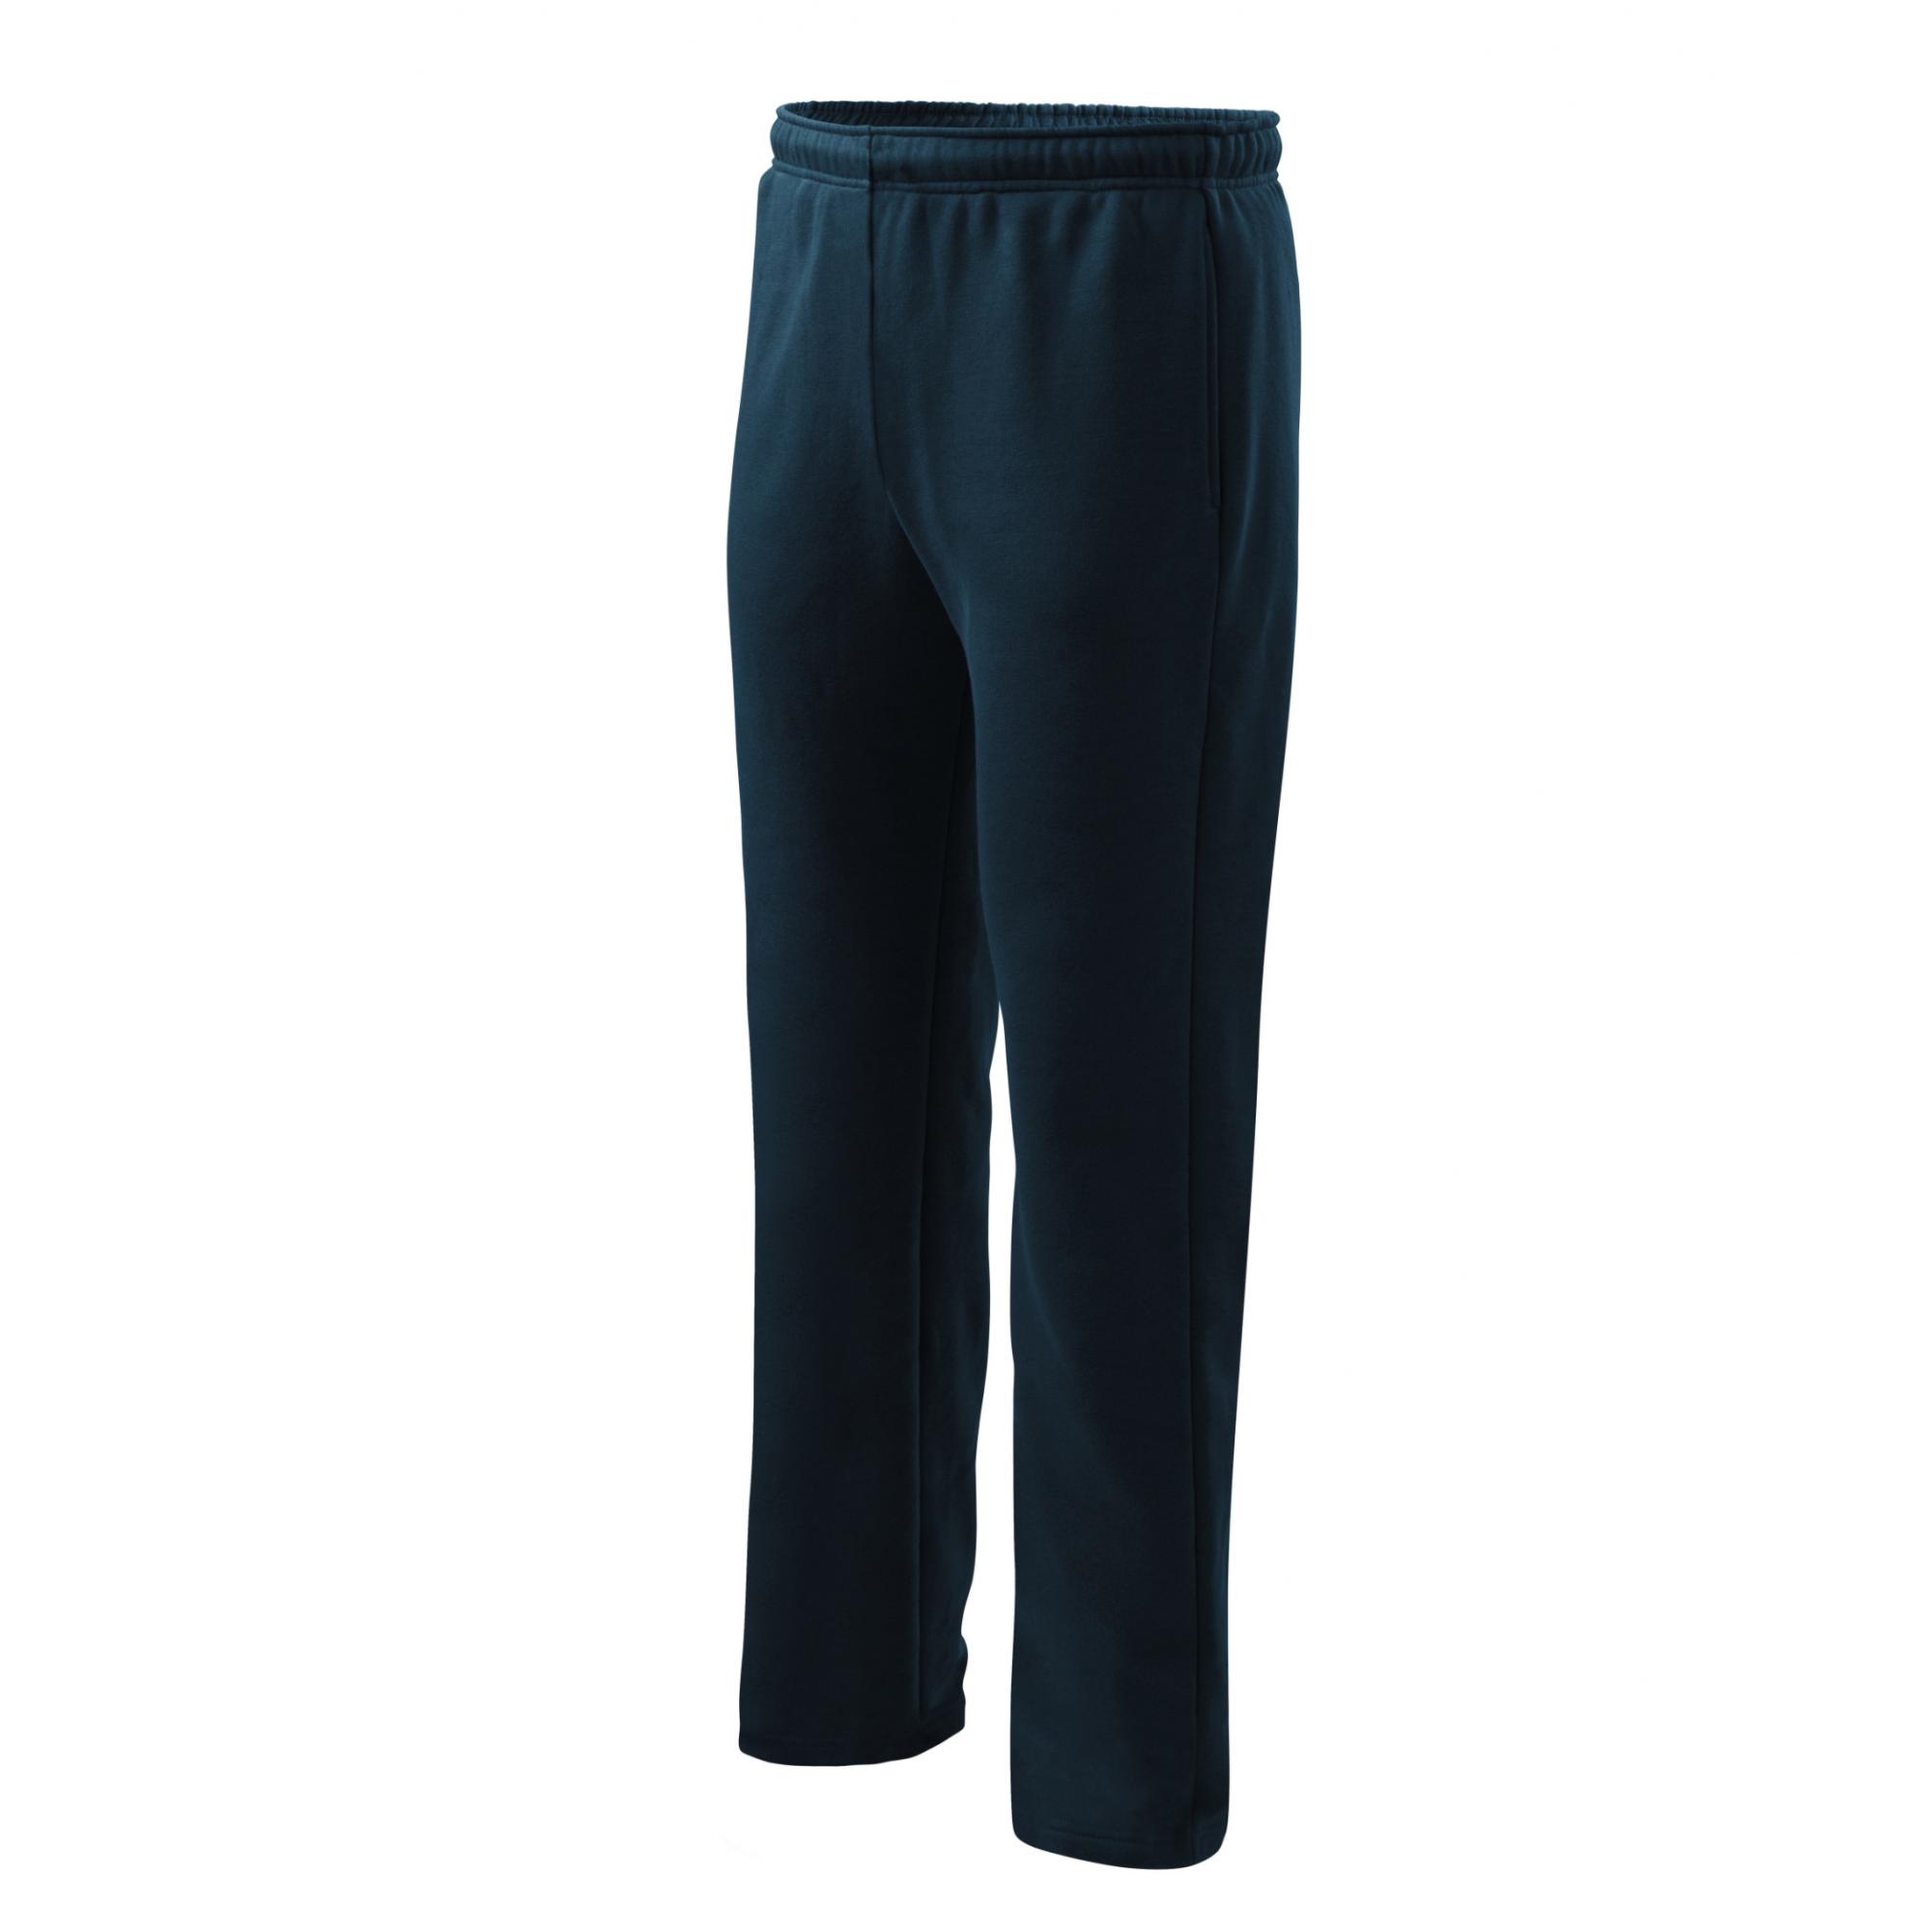 Pantaloni pentru bărbaţi/copii Comfort 607 Albastru marin S